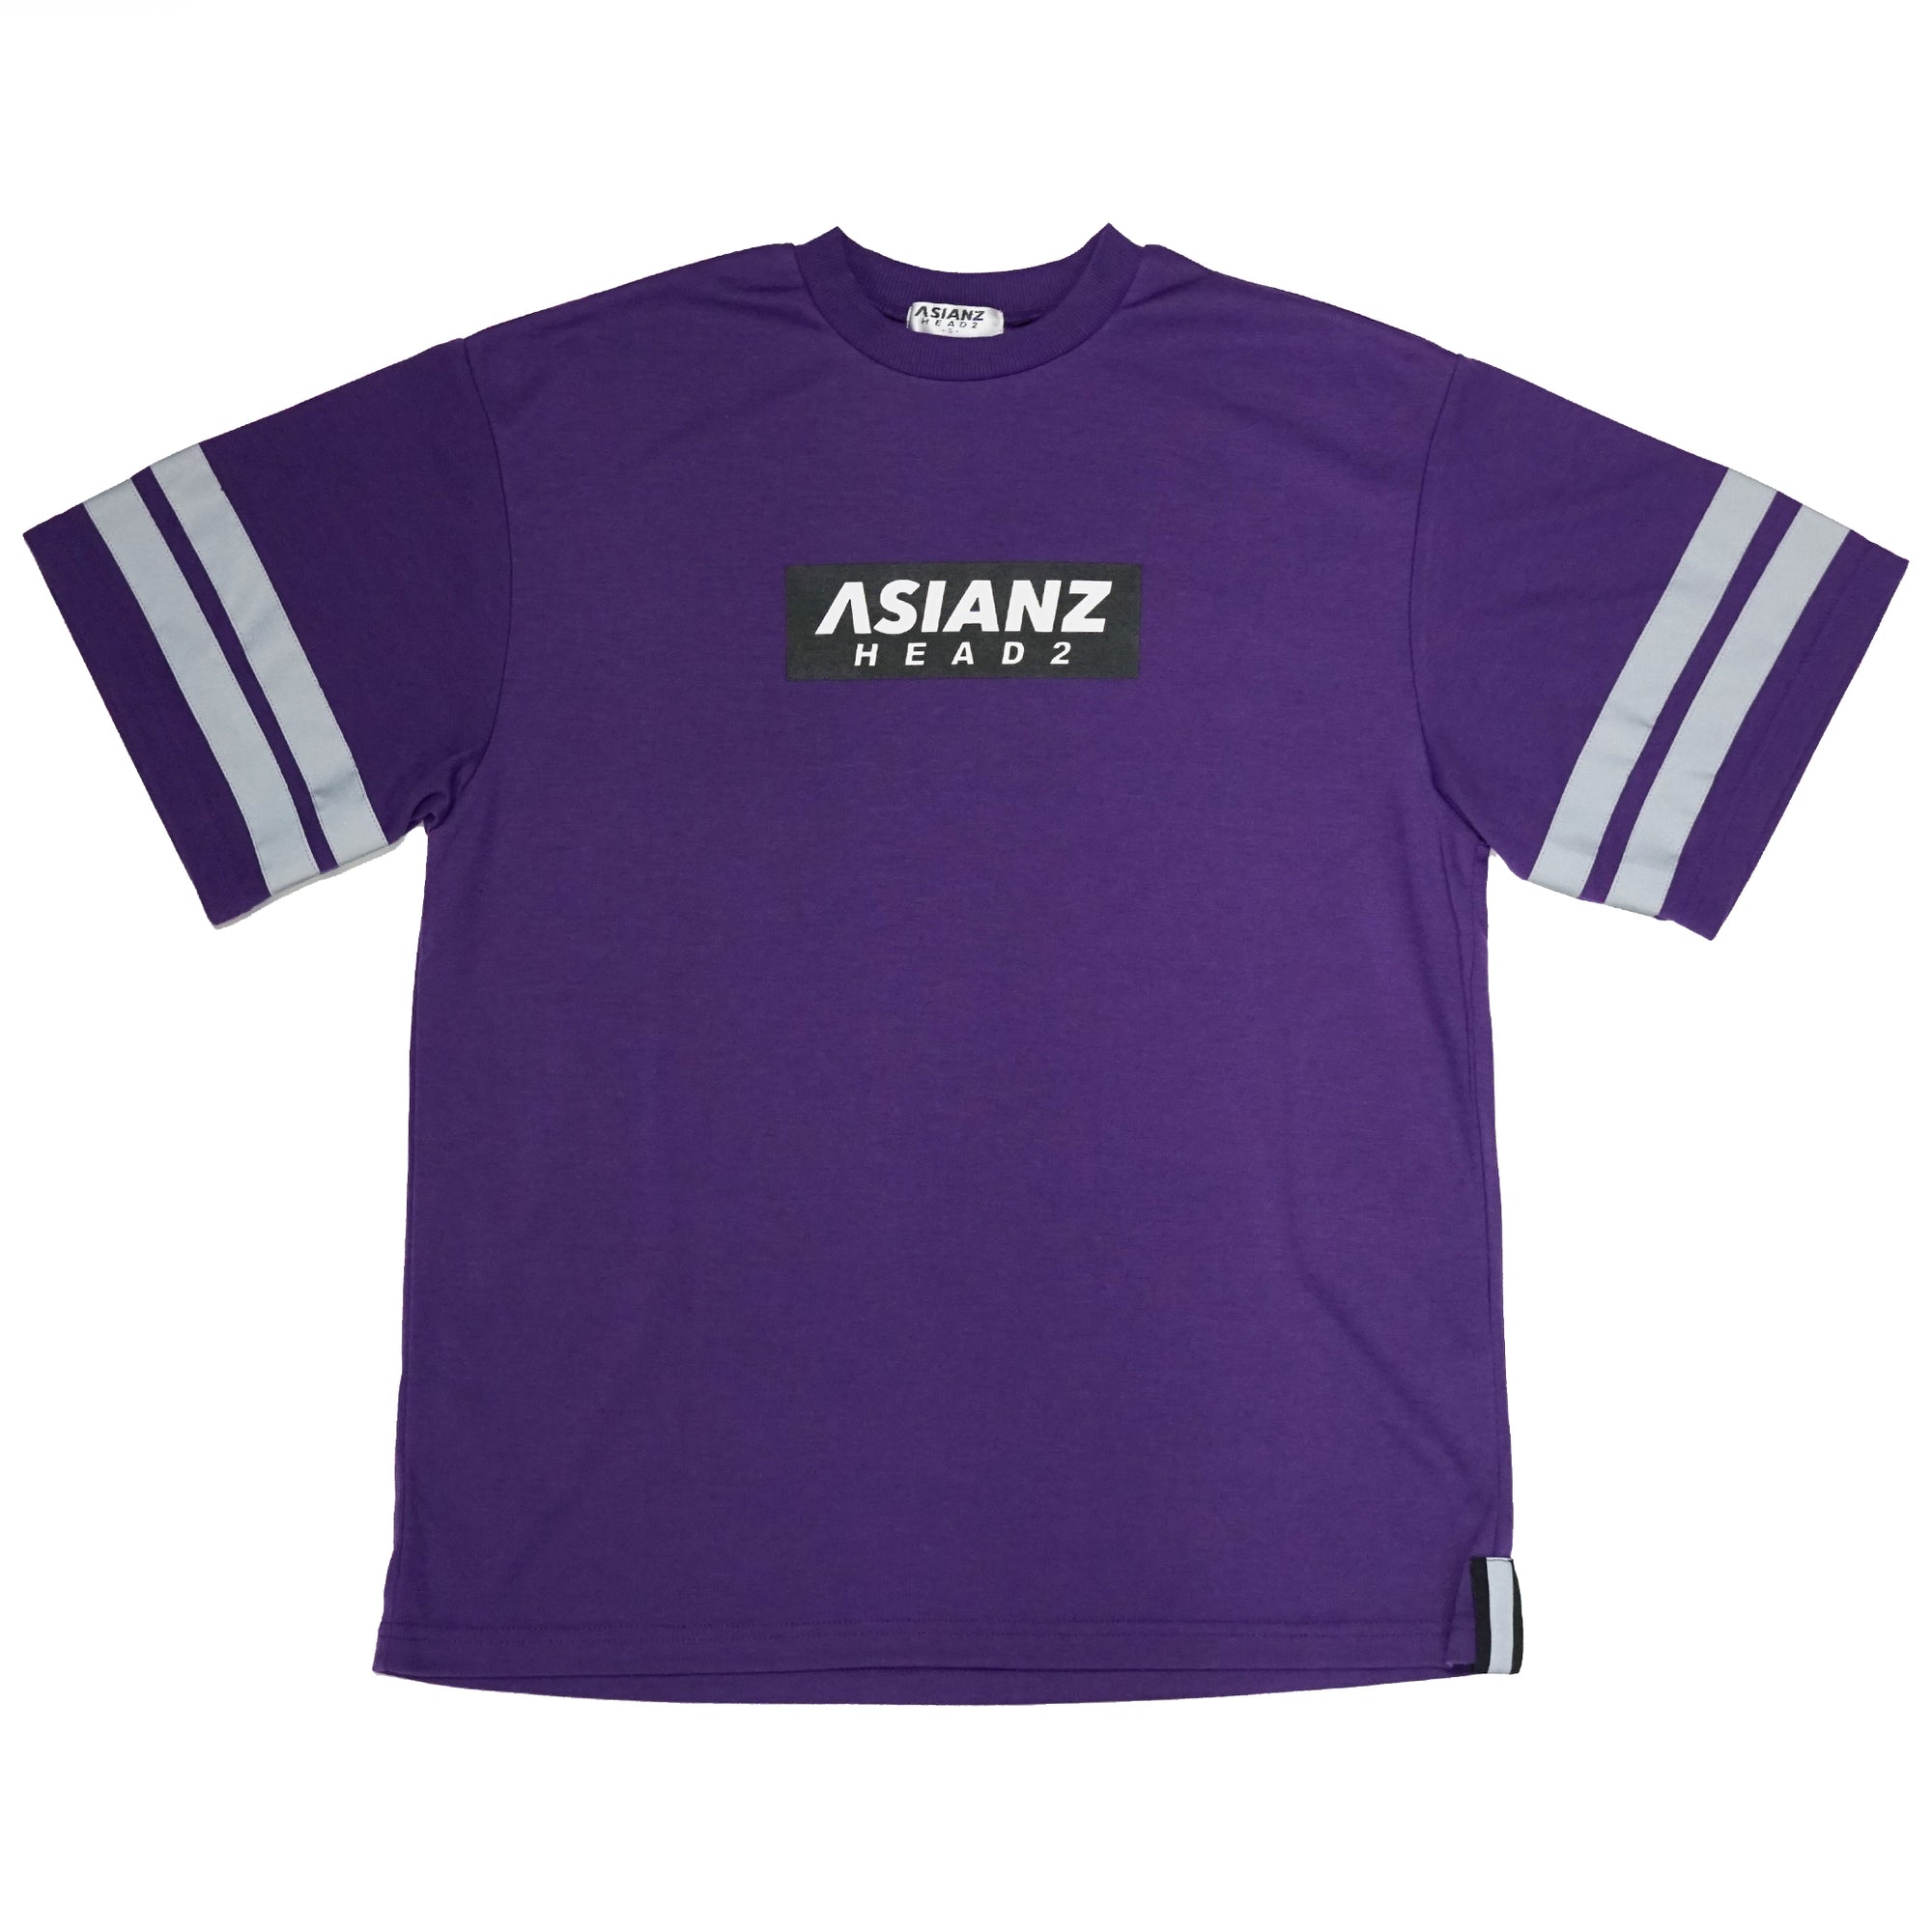 (40%オフ! セール商品)  ASIANZ HEAD2 袖ラインビッグTシャツ キッズウェアー